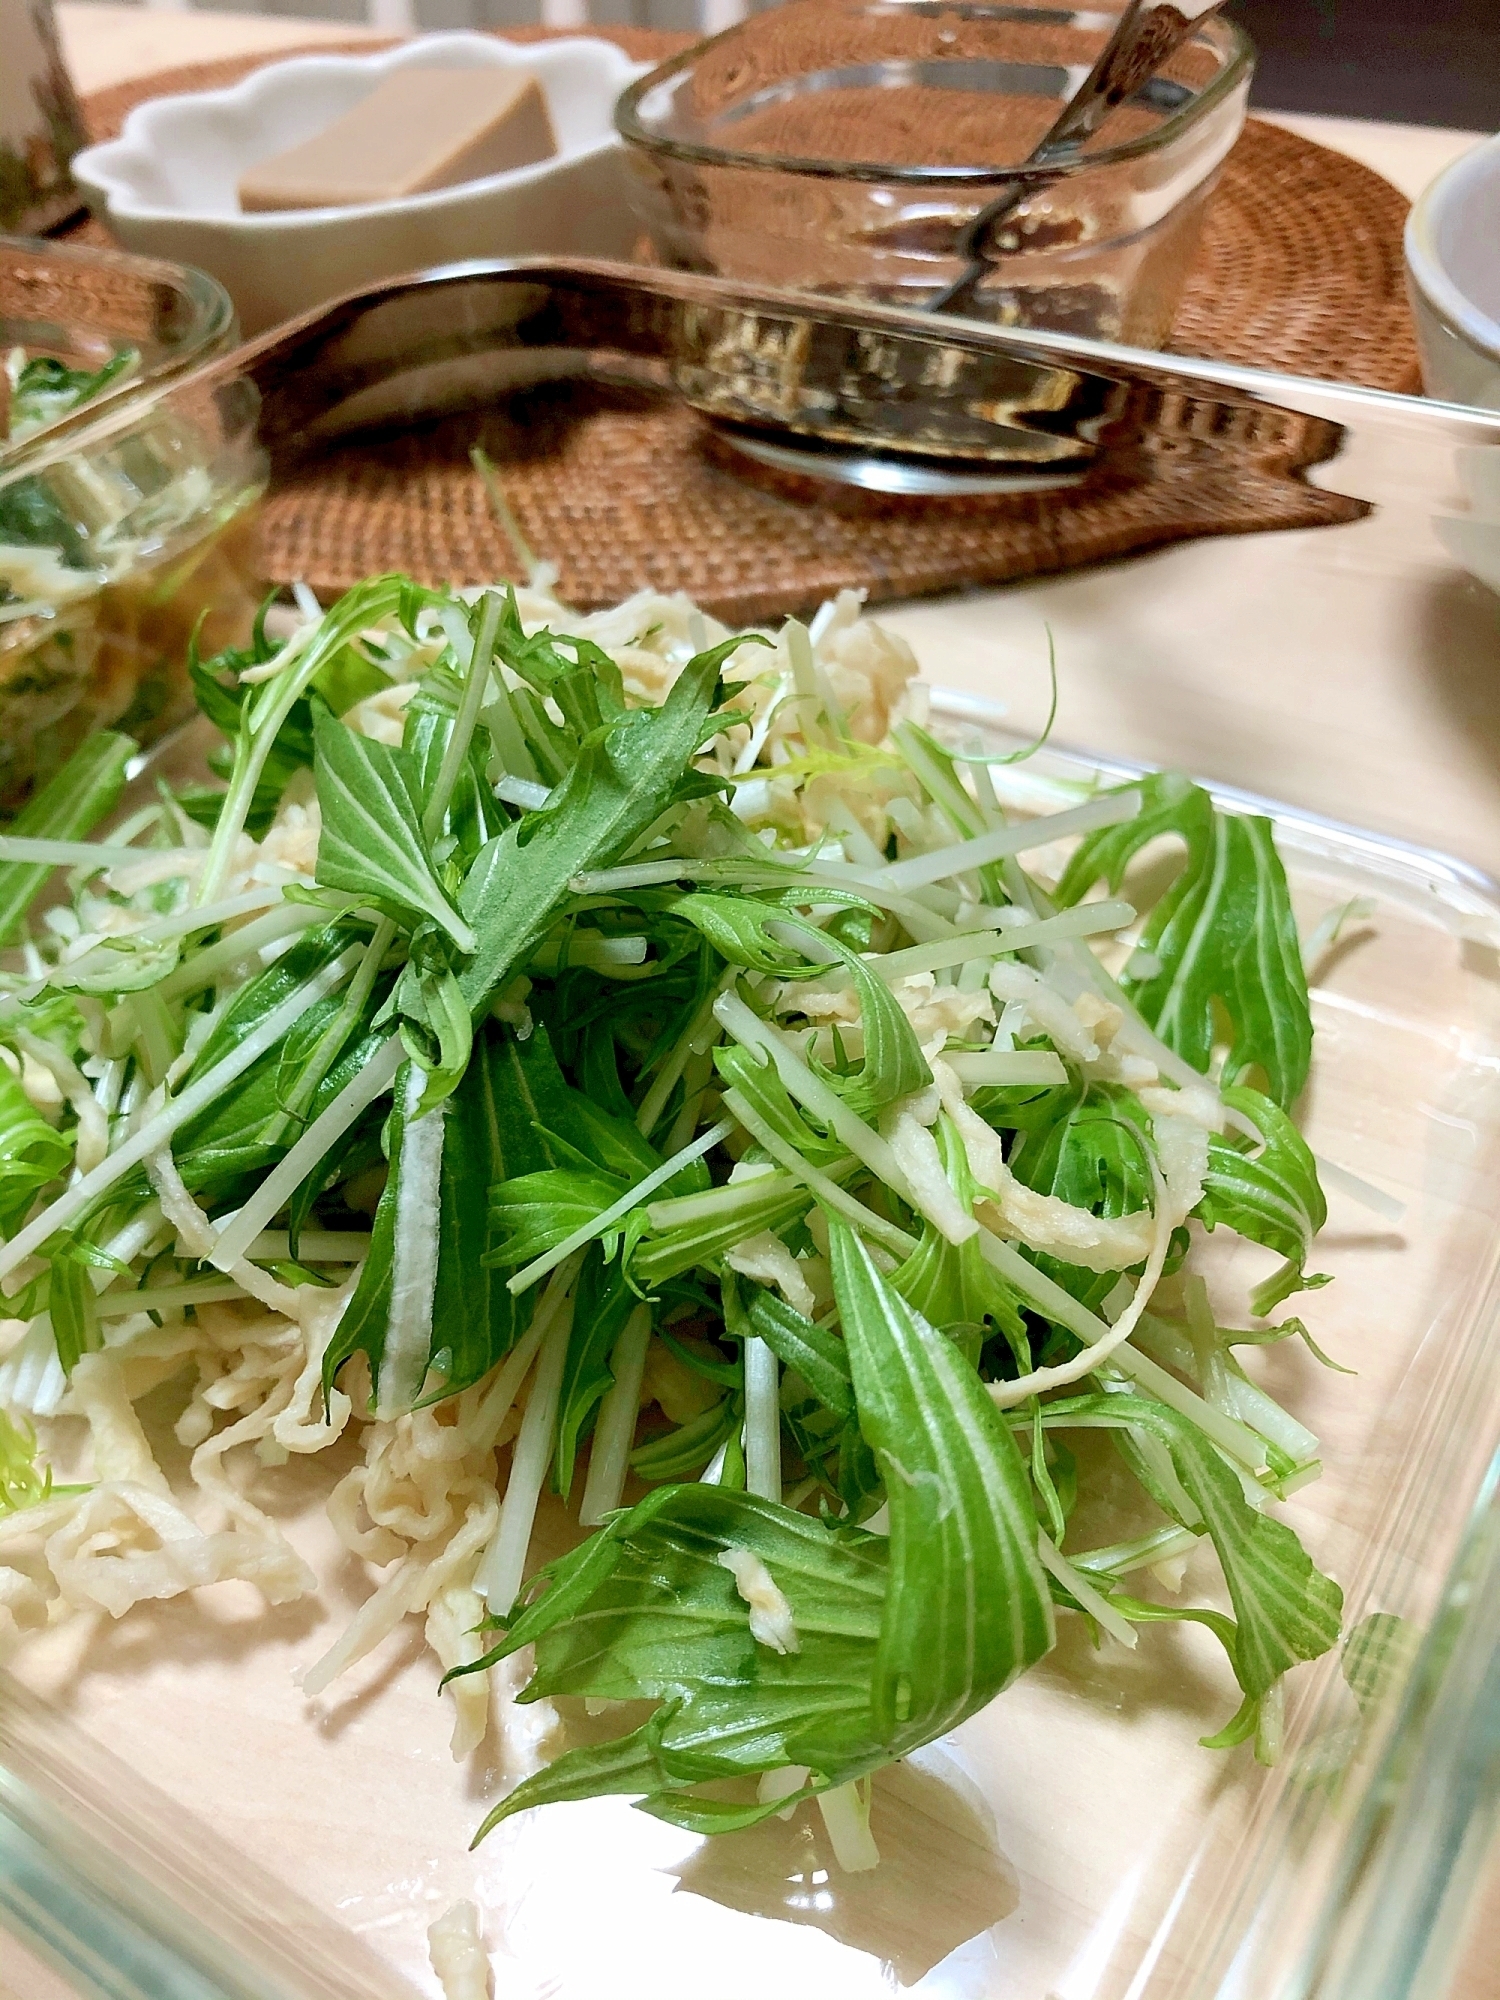 水菜と切り干し大根のサラダ